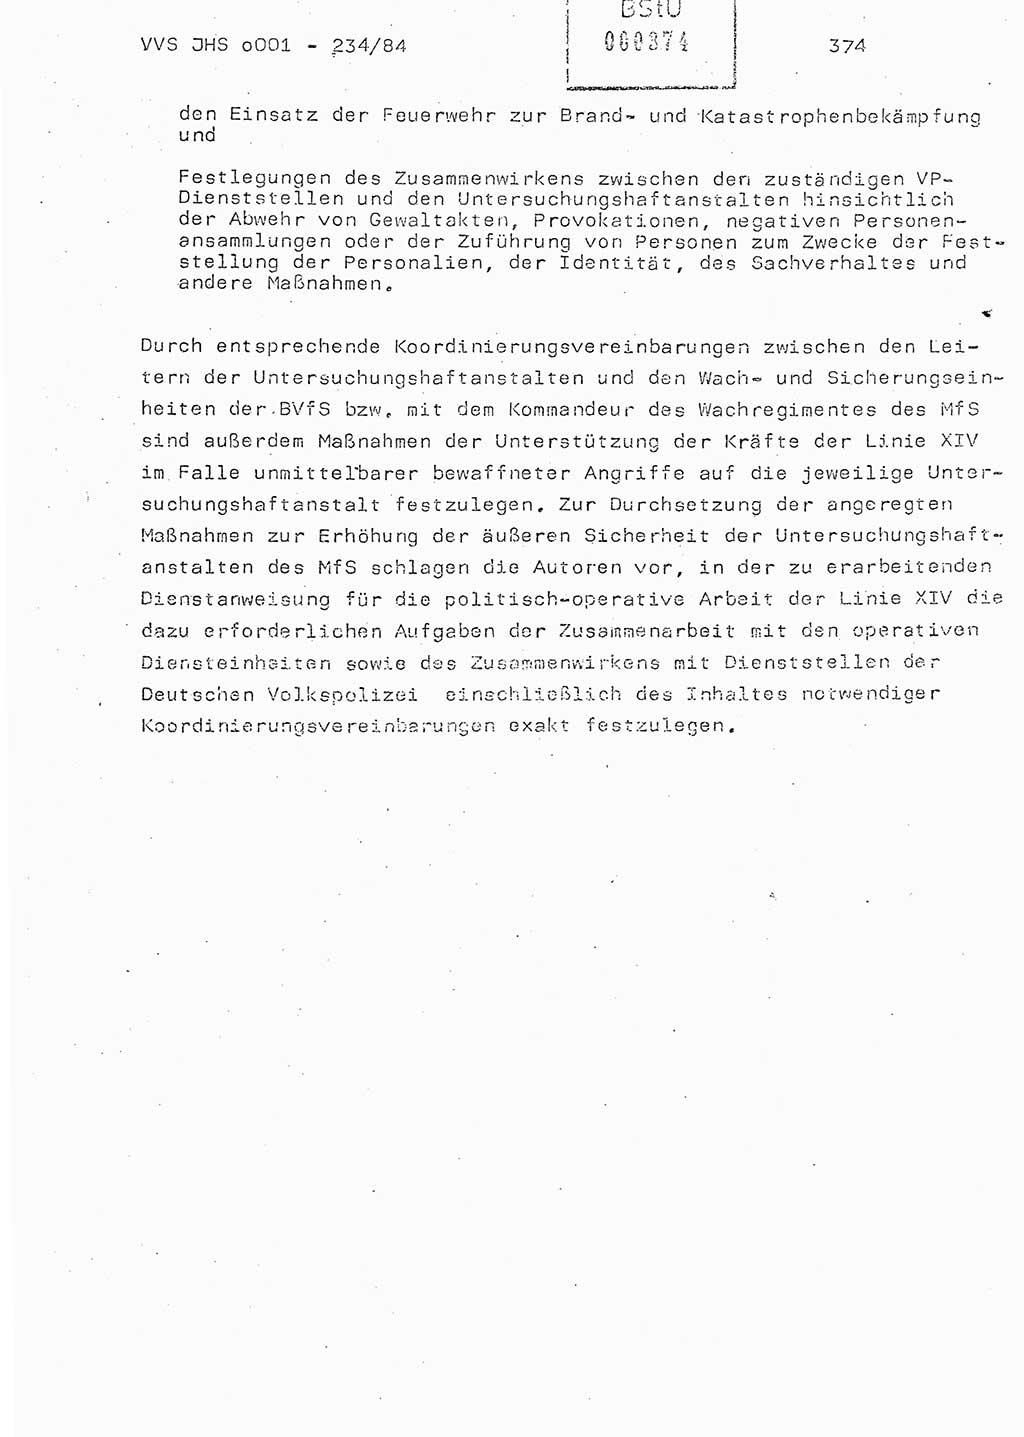 Dissertation Oberst Siegfried Rataizick (Abt. ⅩⅣ), Oberstleutnant Volkmar Heinz (Abt. ⅩⅣ), Oberstleutnant Werner Stein (HA Ⅸ), Hauptmann Heinz Conrad (JHS), Ministerium für Staatssicherheit (MfS) [Deutsche Demokratische Republik (DDR)], Juristische Hochschule (JHS), Vertrauliche Verschlußsache (VVS) o001-234/84, Potsdam 1984, Seite 374 (Diss. MfS DDR JHS VVS o001-234/84 1984, S. 374)